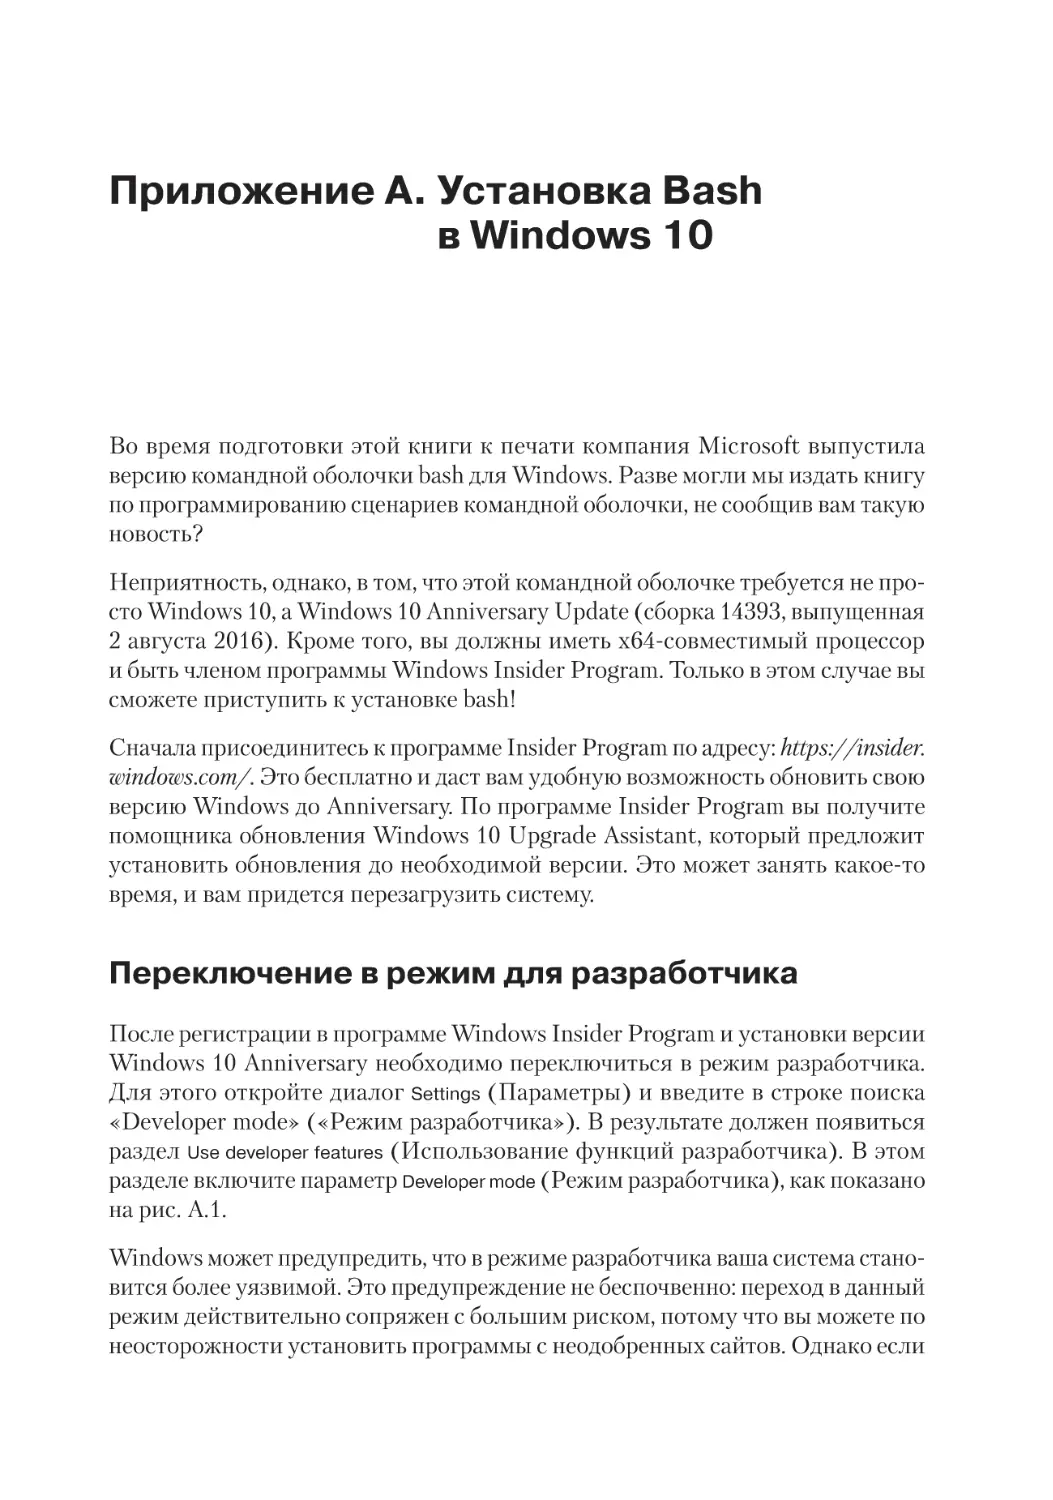 Приложение A. Установка Bash в Windows 10
Переключение в режим для разработчика